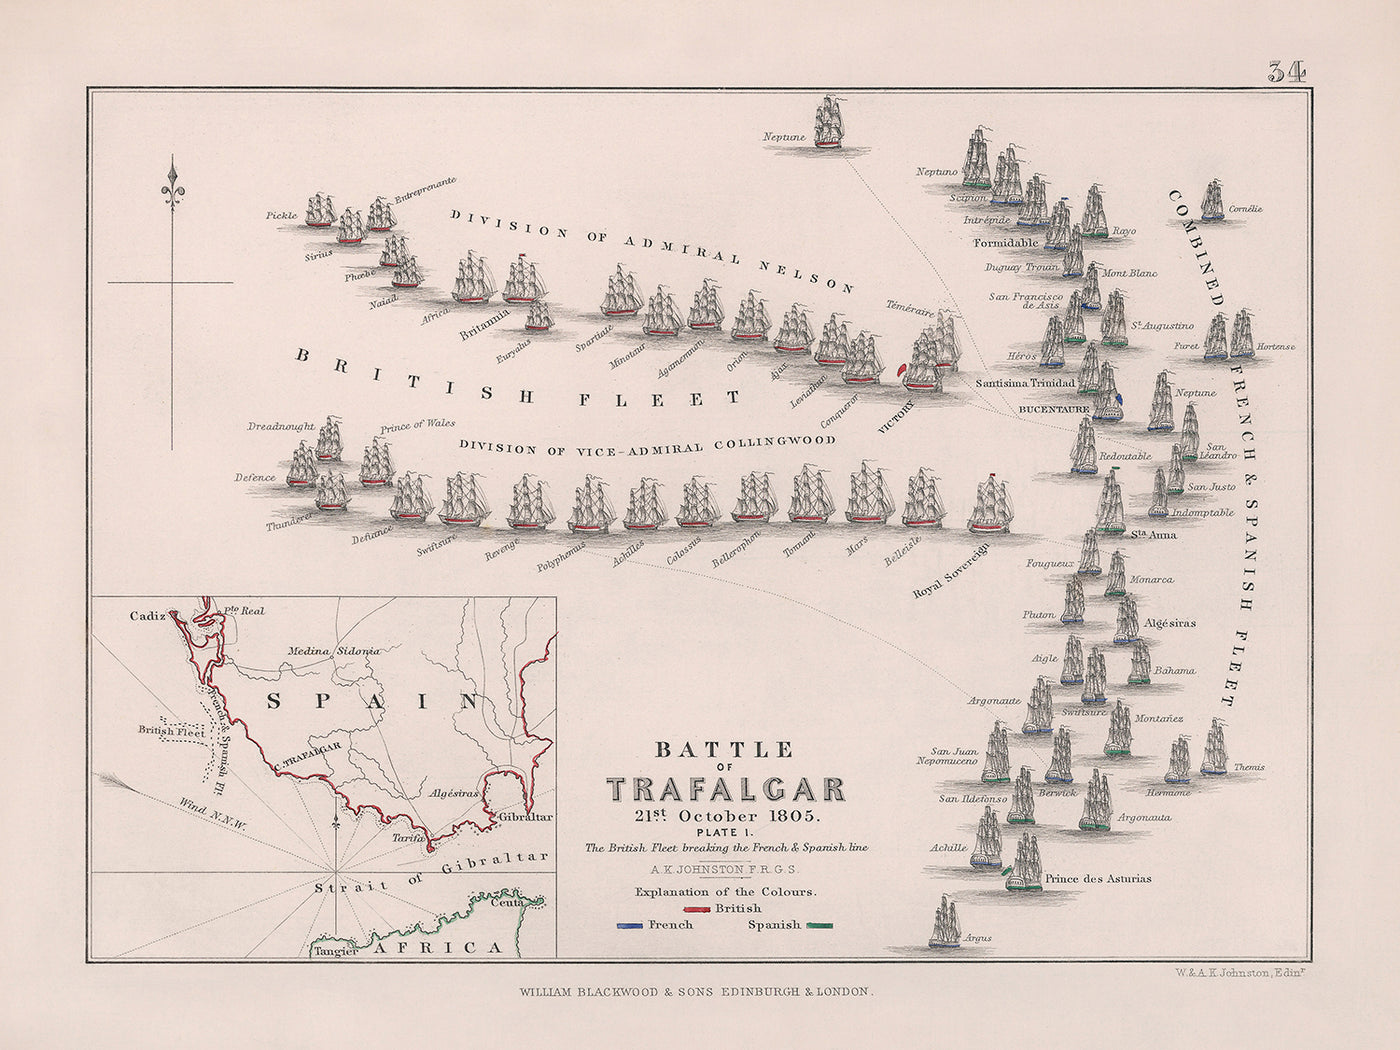 Bataille de Trafalgar : la flotte britannique brisant la ligne française et espagnole par AK Johnston, 1852